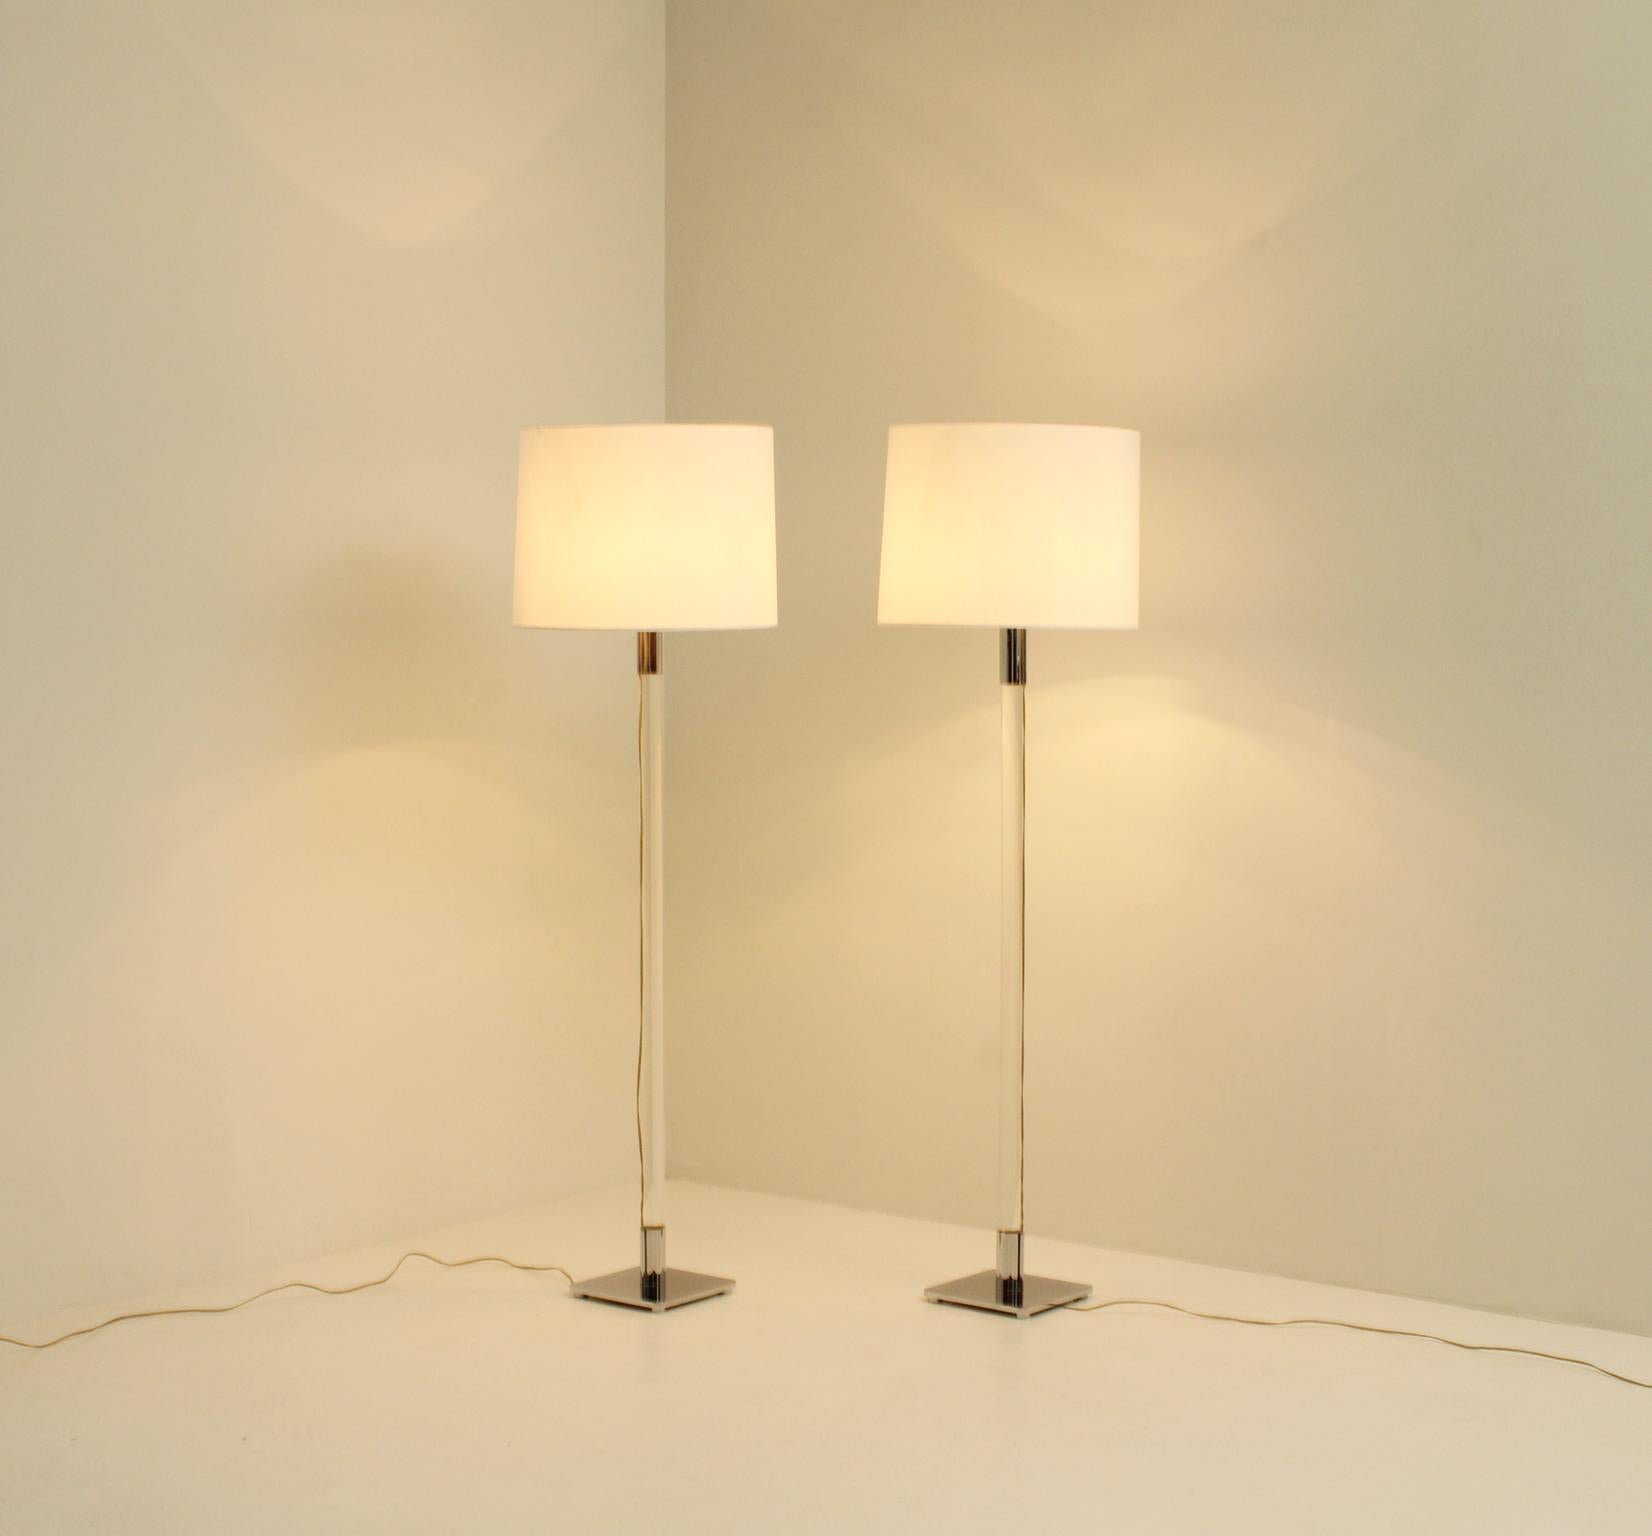 Pair of George Hansen Floor Lamps for Metalarte, Spain 1